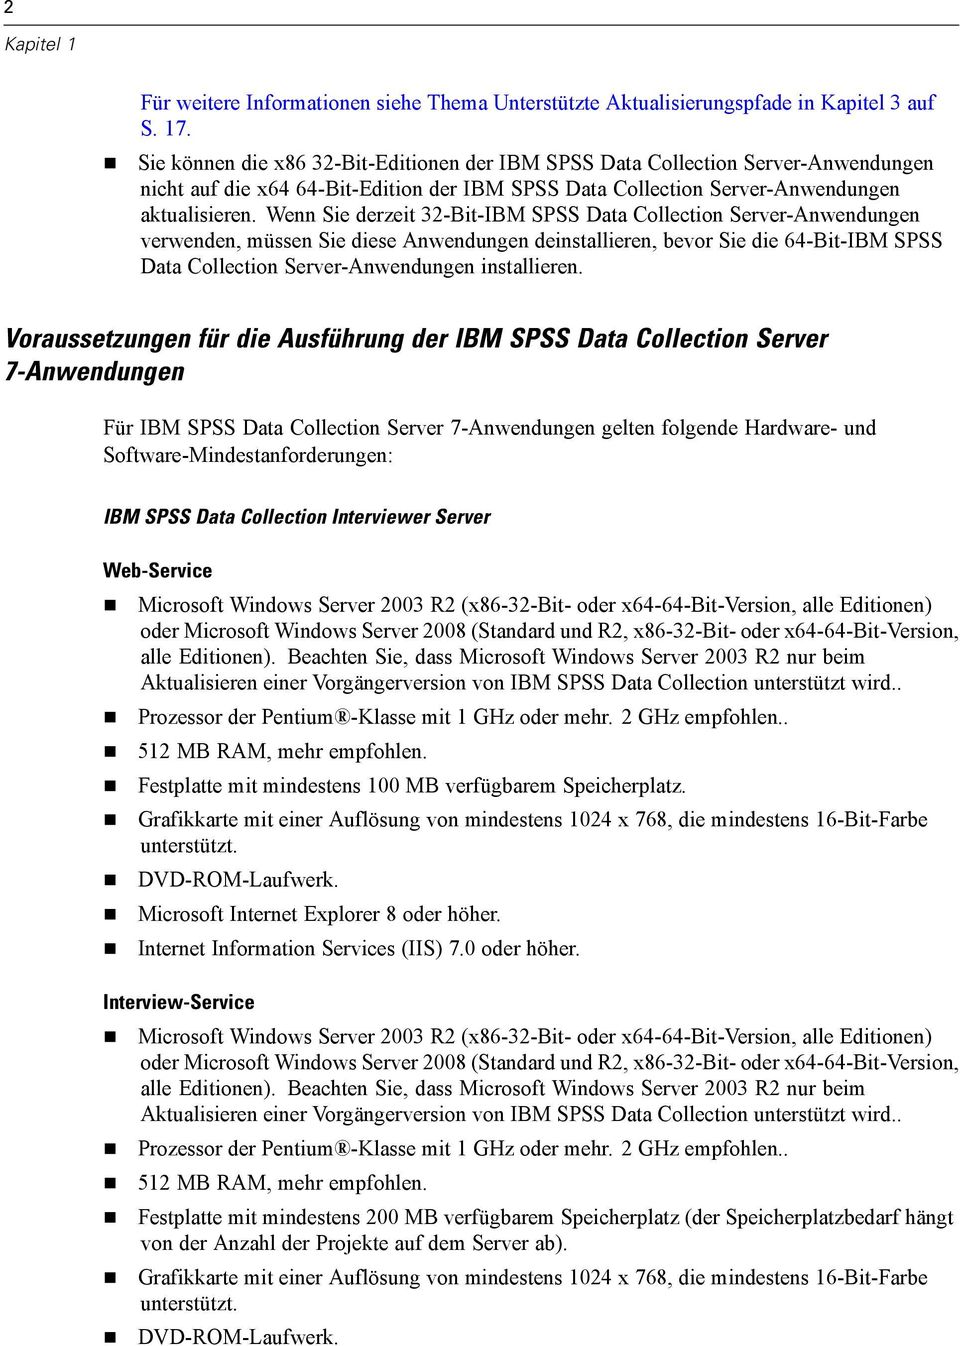 Wenn Sie derzeit 32-Bit-IBM SPSS Data Collection Server-Anwendungen verwenden, müssen Sie diese Anwendungen deinstallieren, bevor Sie die 64-Bit-IBM SPSS Data Collection Server-Anwendungen